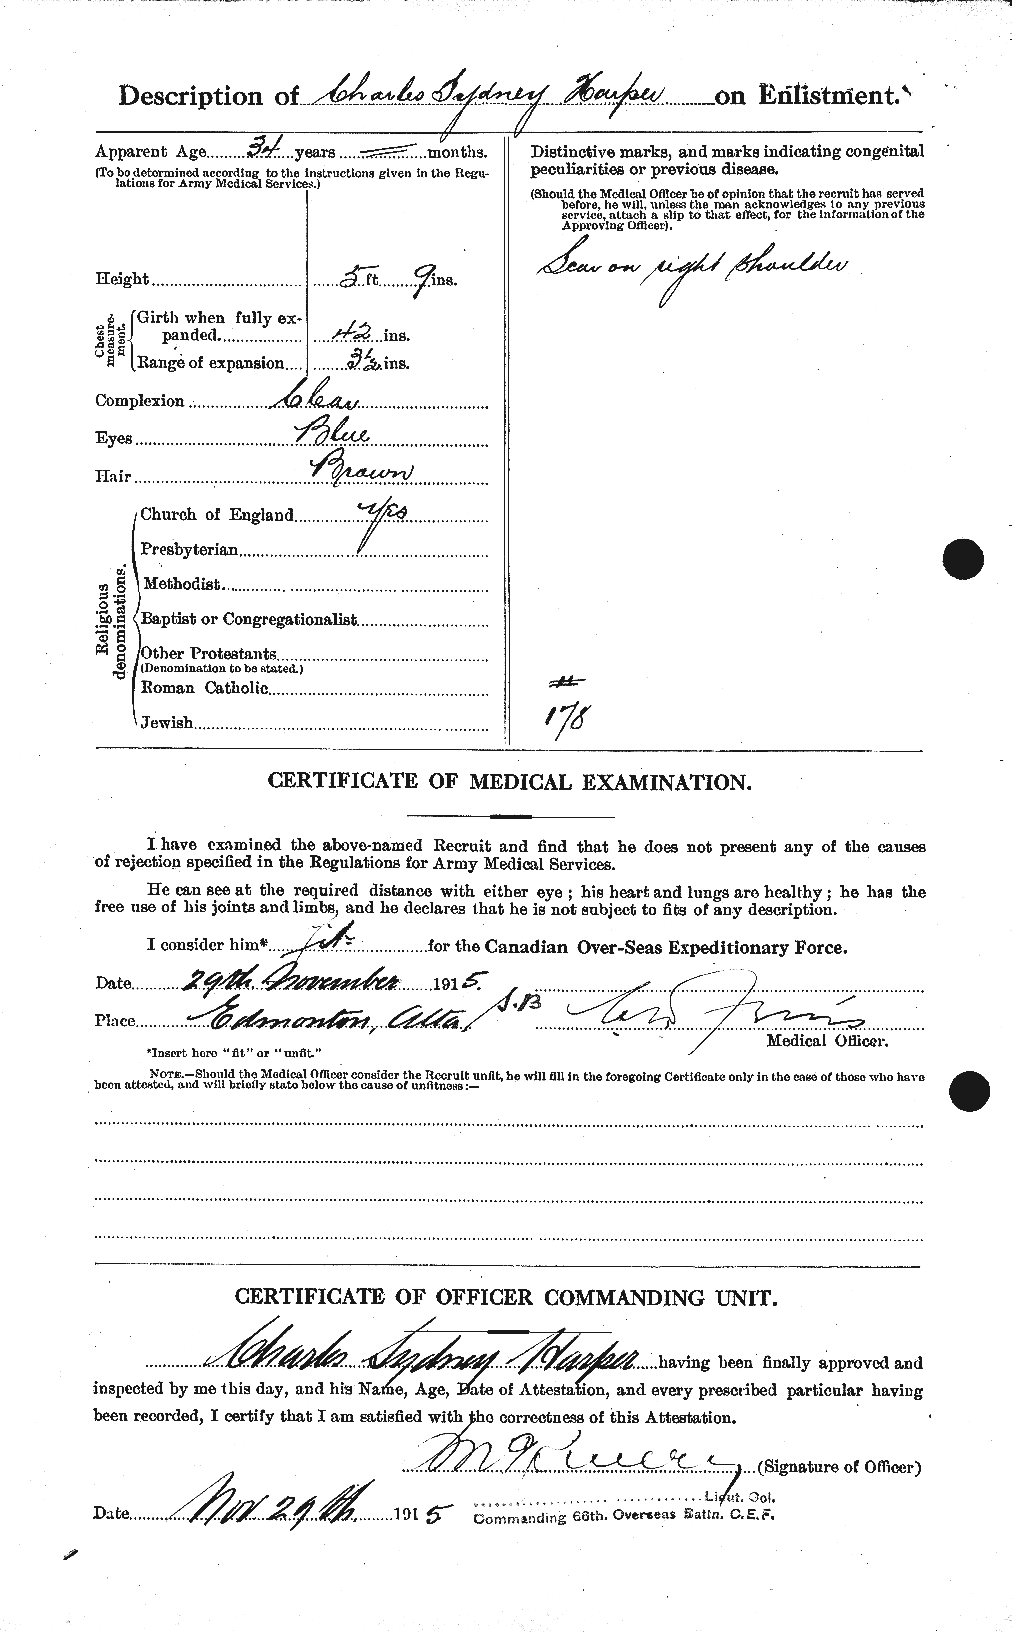 Dossiers du Personnel de la Première Guerre mondiale - CEC 380792b